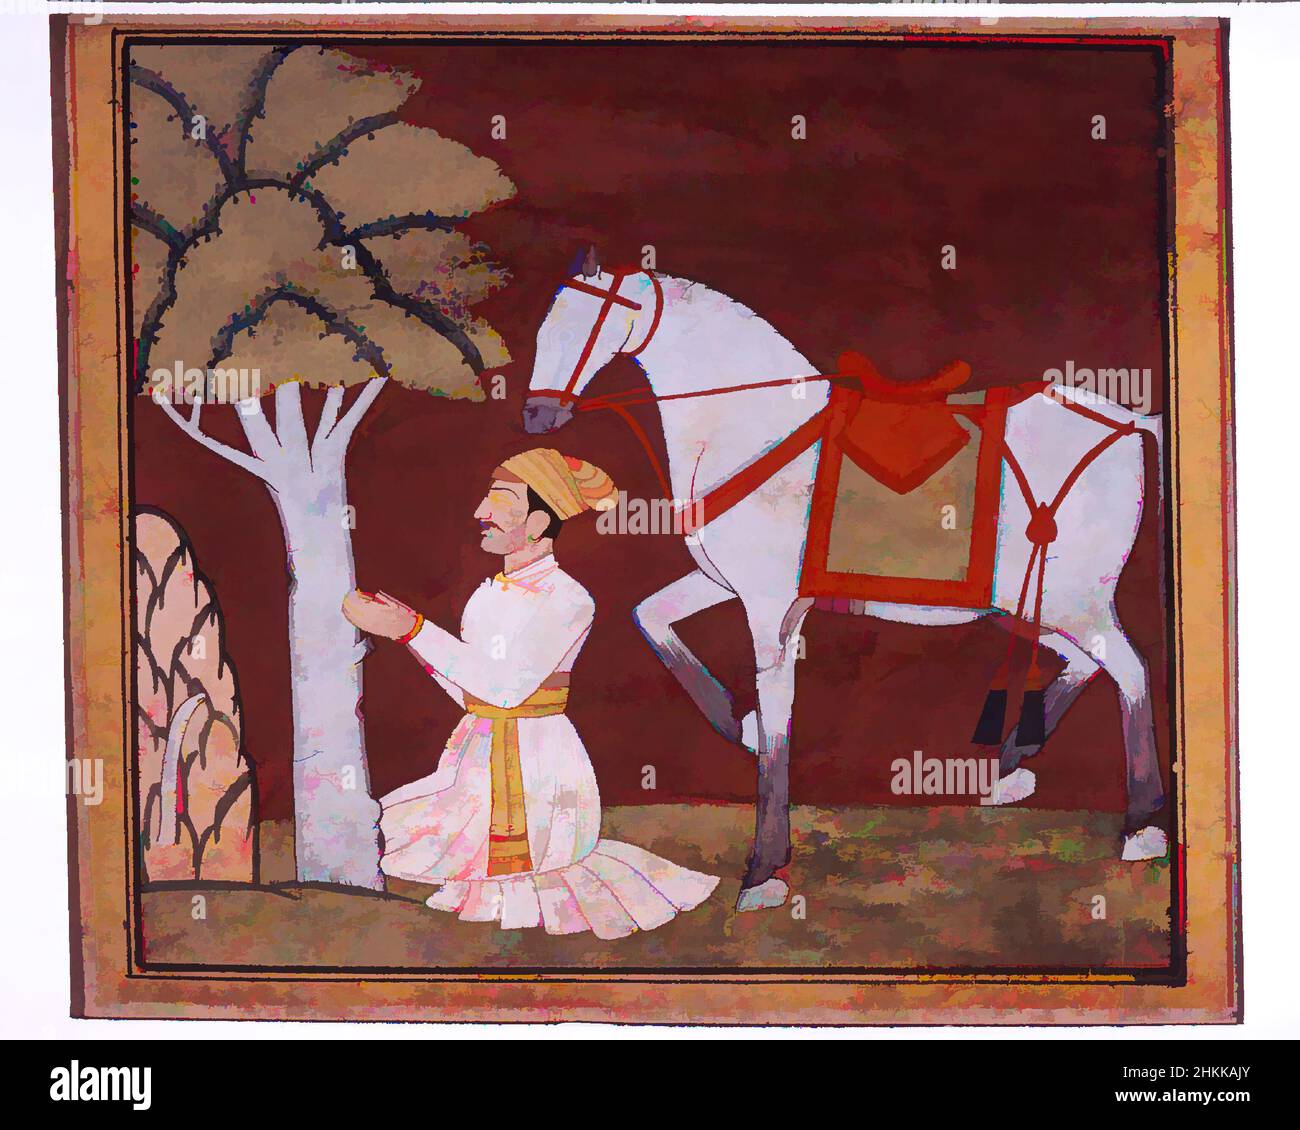 Art inspiré par l'illustration d'une série Madhu-Malati, attribué à Bhagvan, aquarelle opaque et or sur papier, Punjab Hills, Inde, ca. 1799, feuille : 6 1/2 x 8 5/8 po, 16,5 x 21,9 cm, barbu, Bhagvan, Or, cheval, Peinture indienne, agenouillement, Kulu, lacustre d'un Madhu-, œuvres classiques modernisées par Artotop avec une touche de modernité. Formes, couleur et valeur, impact visuel accrocheur sur l'art émotions par la liberté d'œuvres d'art d'une manière contemporaine. Un message intemporel qui cherche une nouvelle direction créative. Artistes qui se tournent vers le support numérique et créent le NFT Artotop Banque D'Images